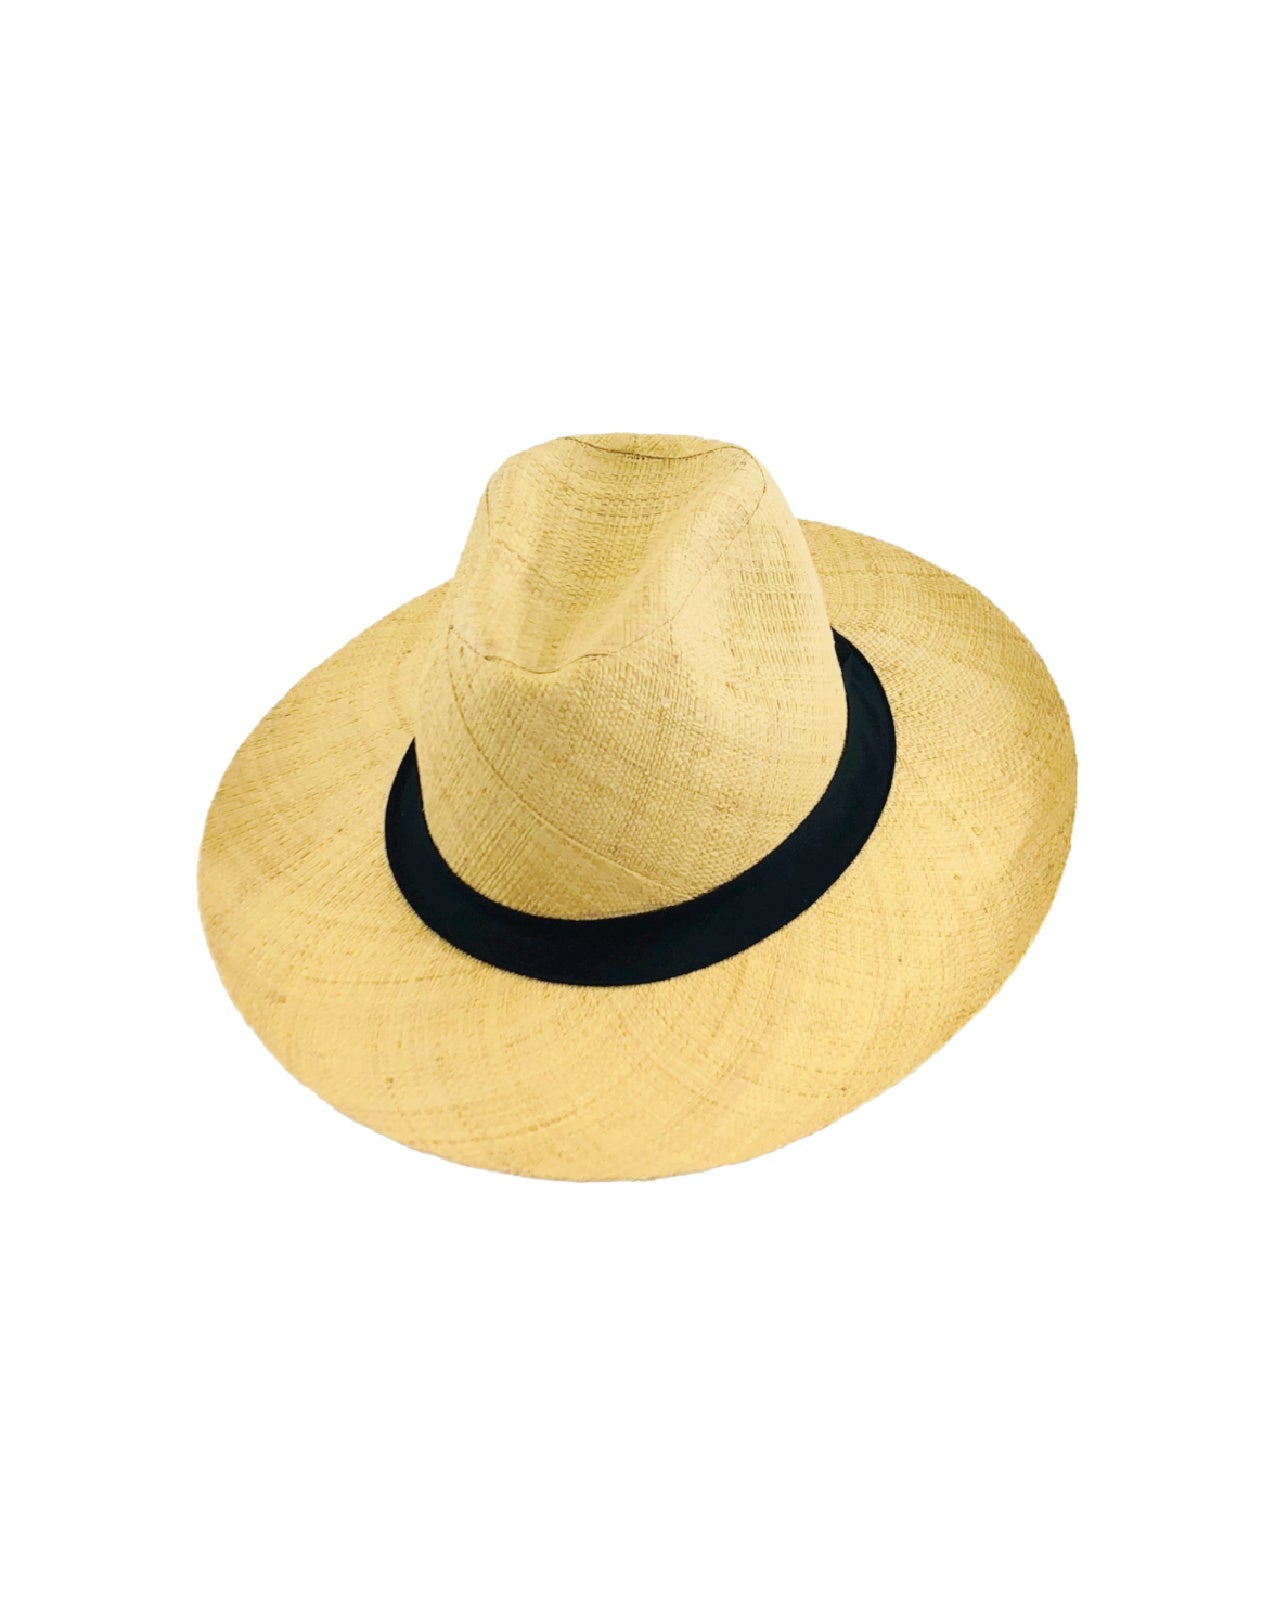 Panama Unisex Straw Hat Black Band